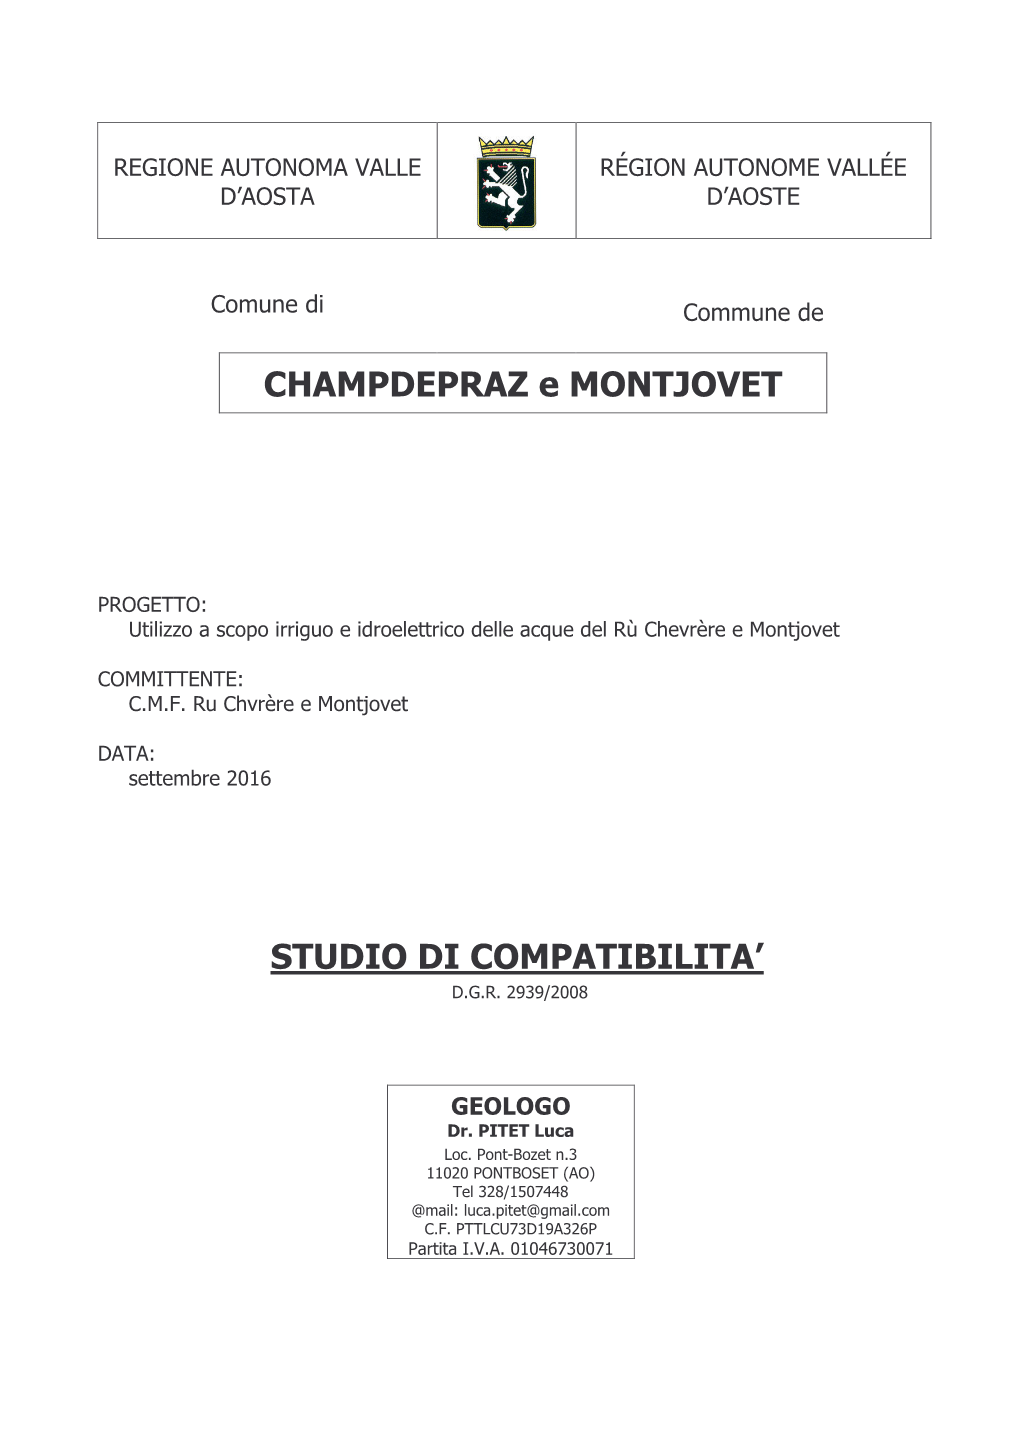 CHAMPDEPRAZ E MONTJOVET STUDIO DI COMPATIBILITA'